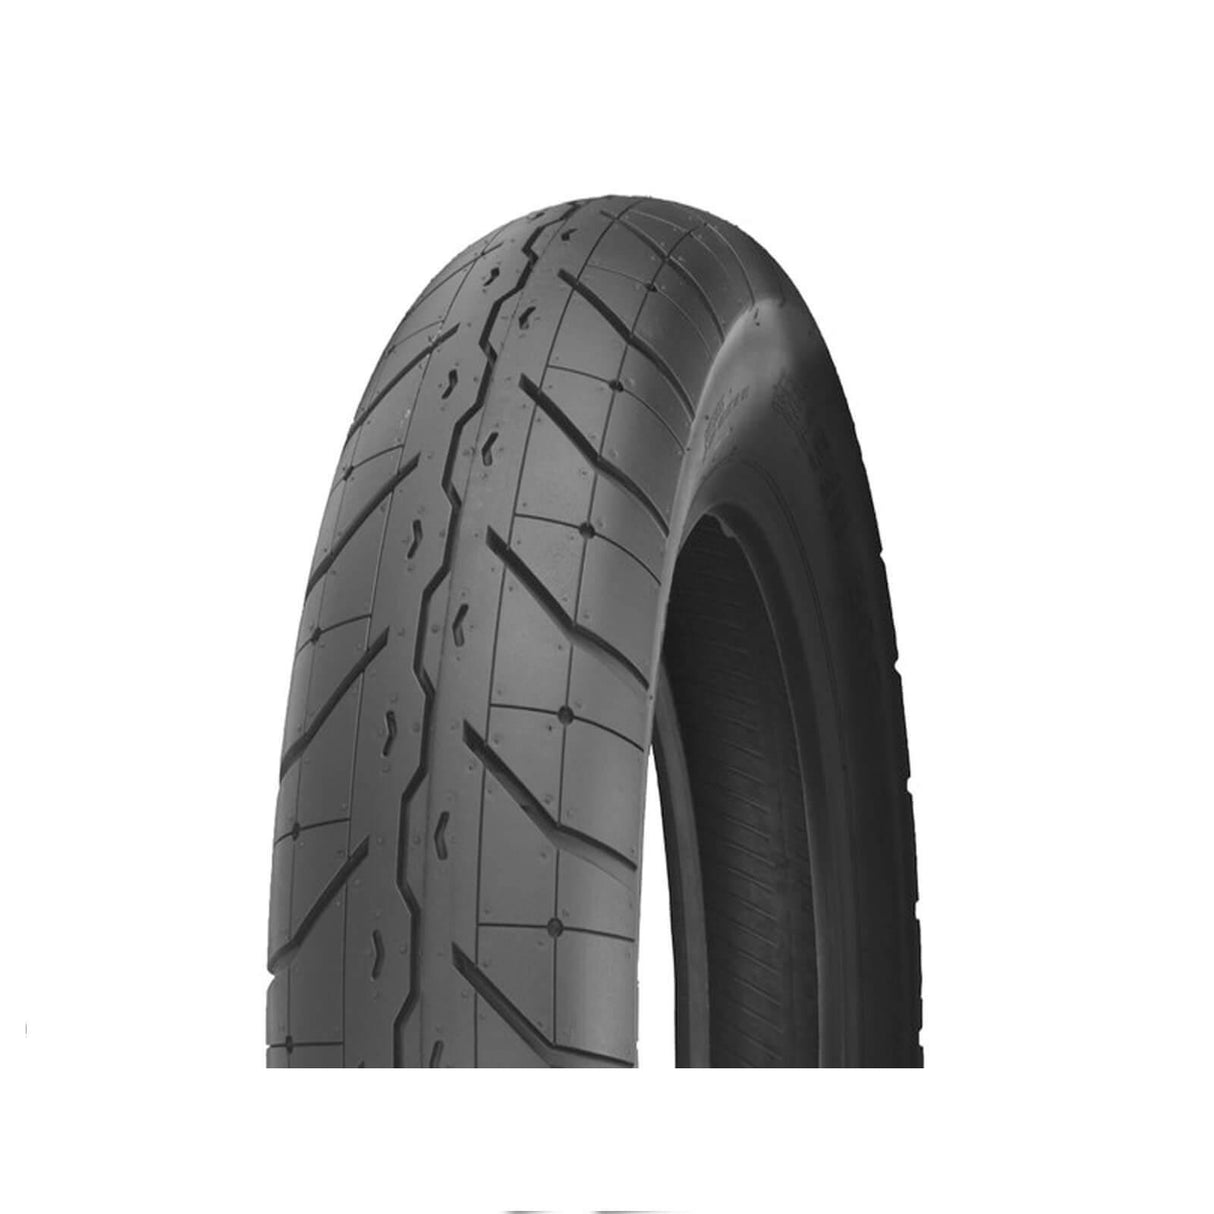 150/80-16 F230 Tour Master Shinko Front Tyre